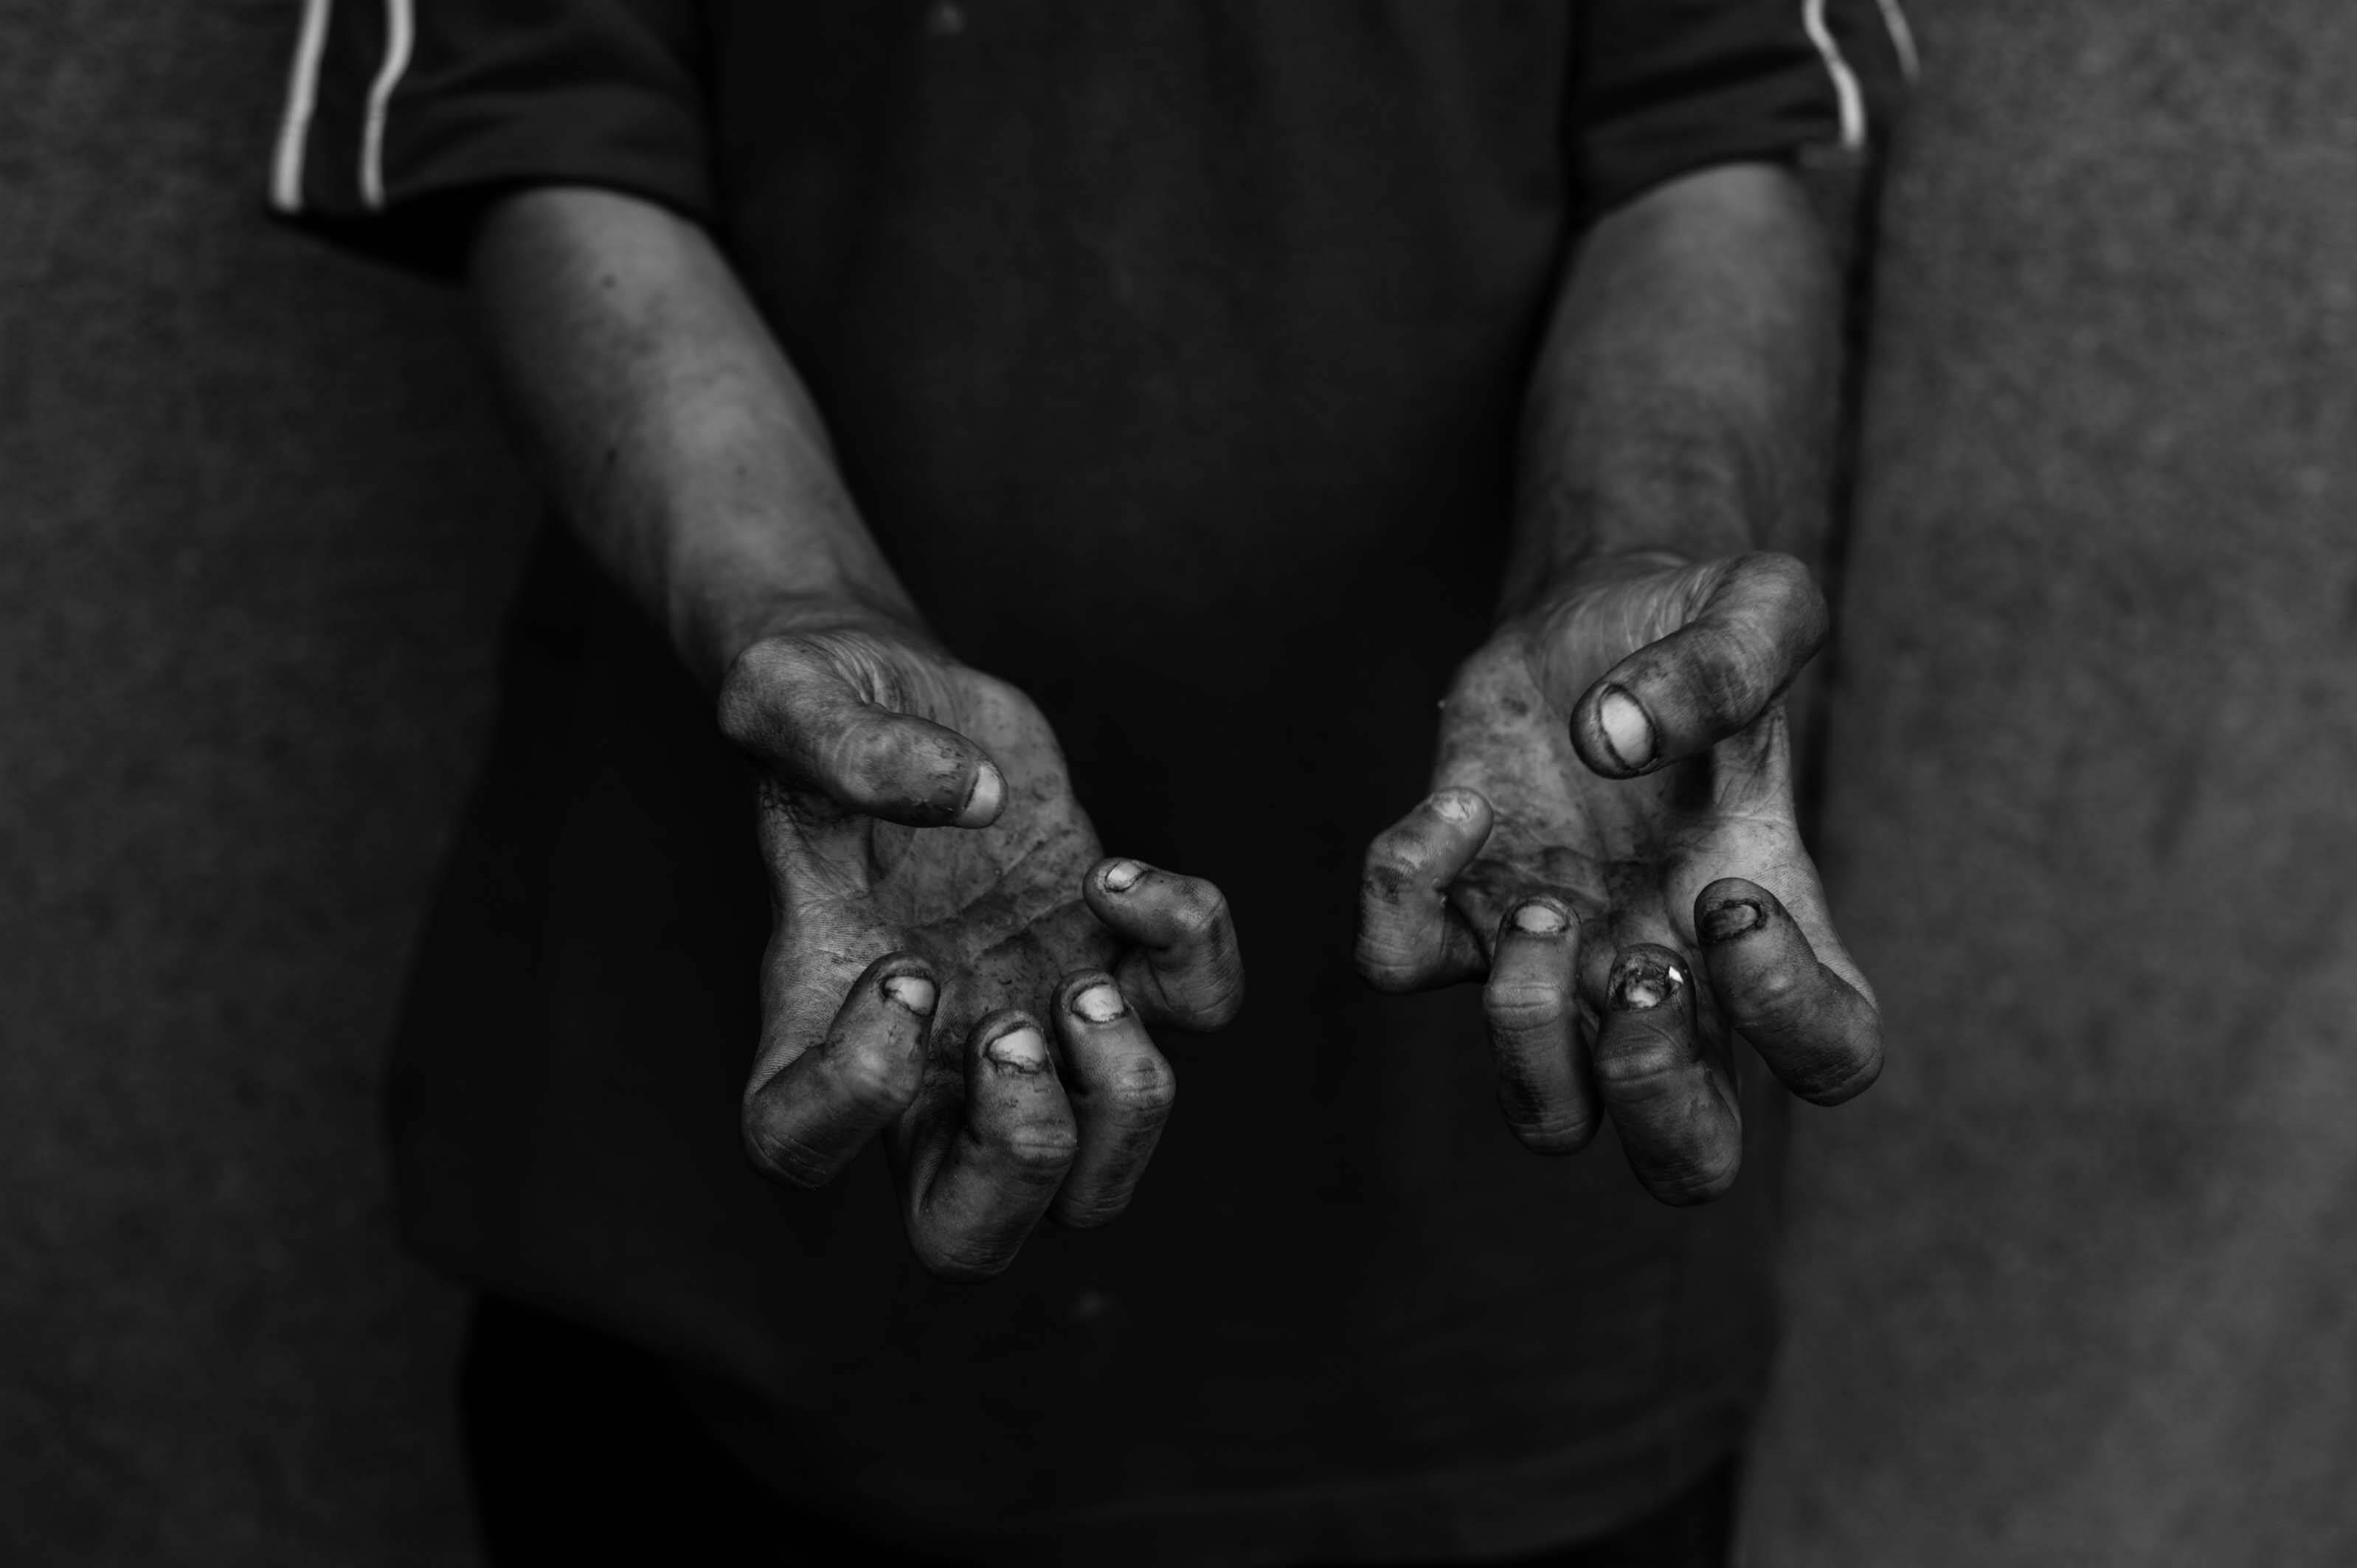 Já as mãos Pedro Enrique, de 18 anos, revelariam agressividade do jovem. Foto: Alessio Ortu/Simulacrum Praecipitii